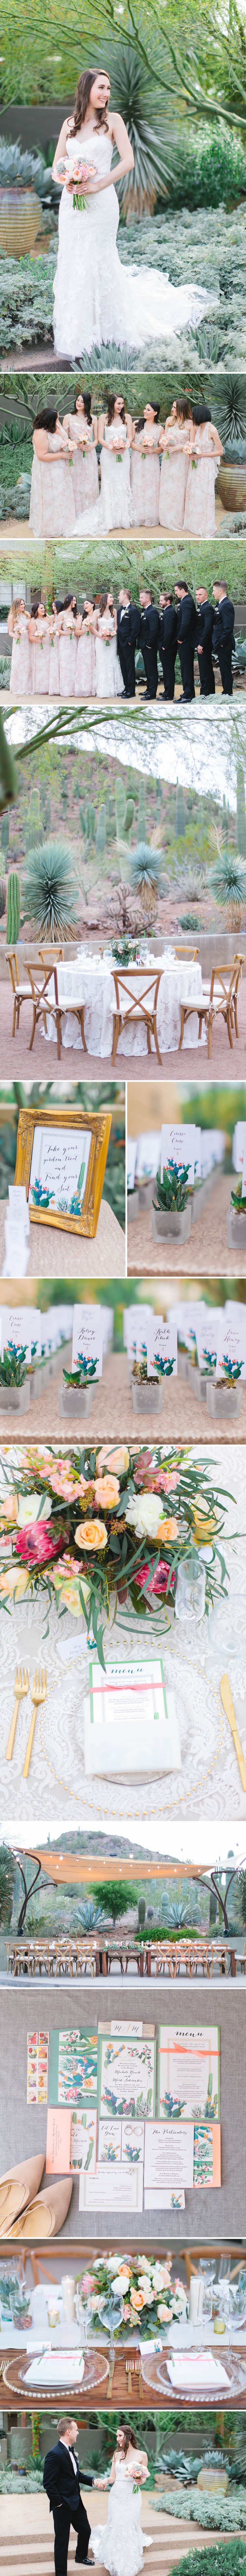 Desert Cactus Garden Wedding | Beacon Lane Real Wedding